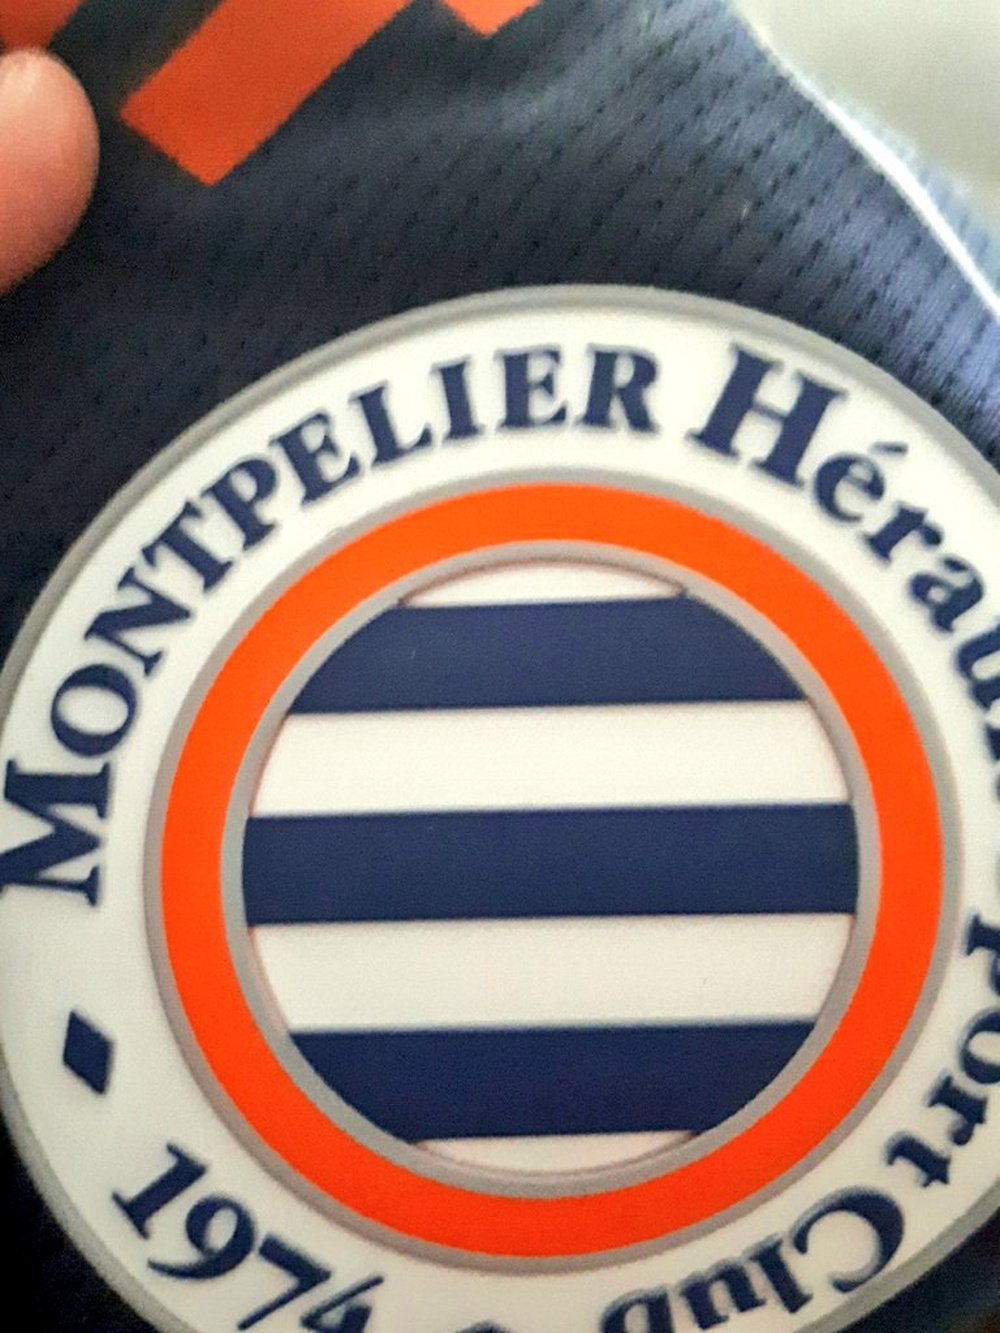 El Montpellier ha vendido camisetas con este error ortográficoo... Twitter/AkBoni63